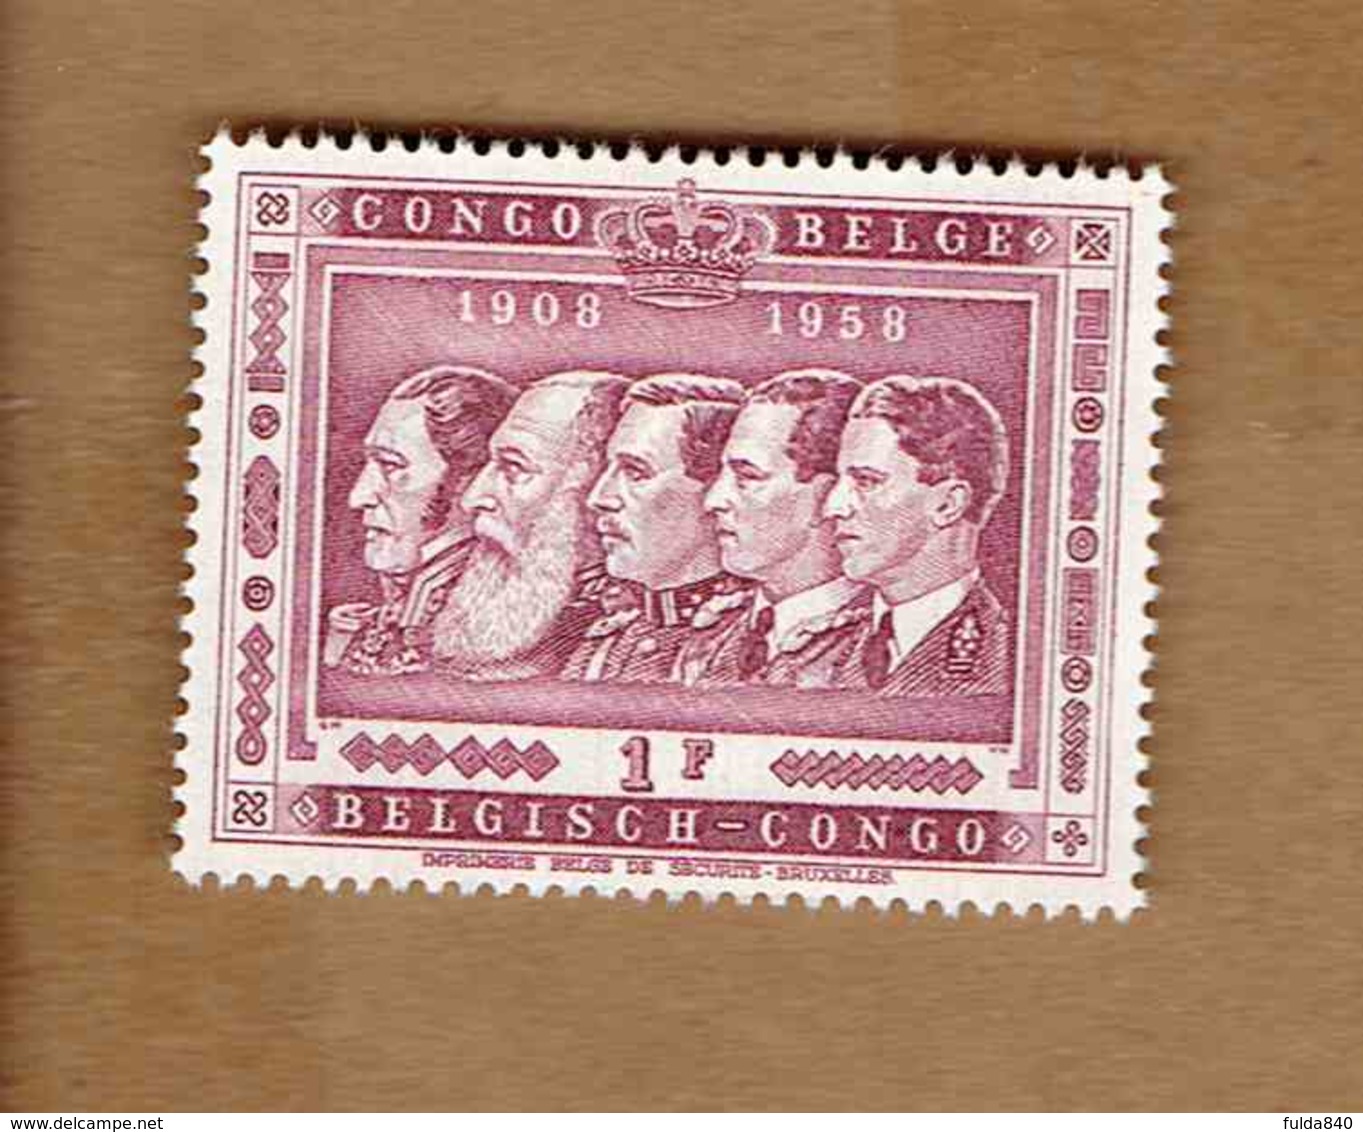 Congo Belge: OBP-COB.  1958 - N°344. *CINQUANTENAIRE DU CONGO BELGE. LES CIQ ROIS DES BELGES*     1F  Neuf*  . - Neufs